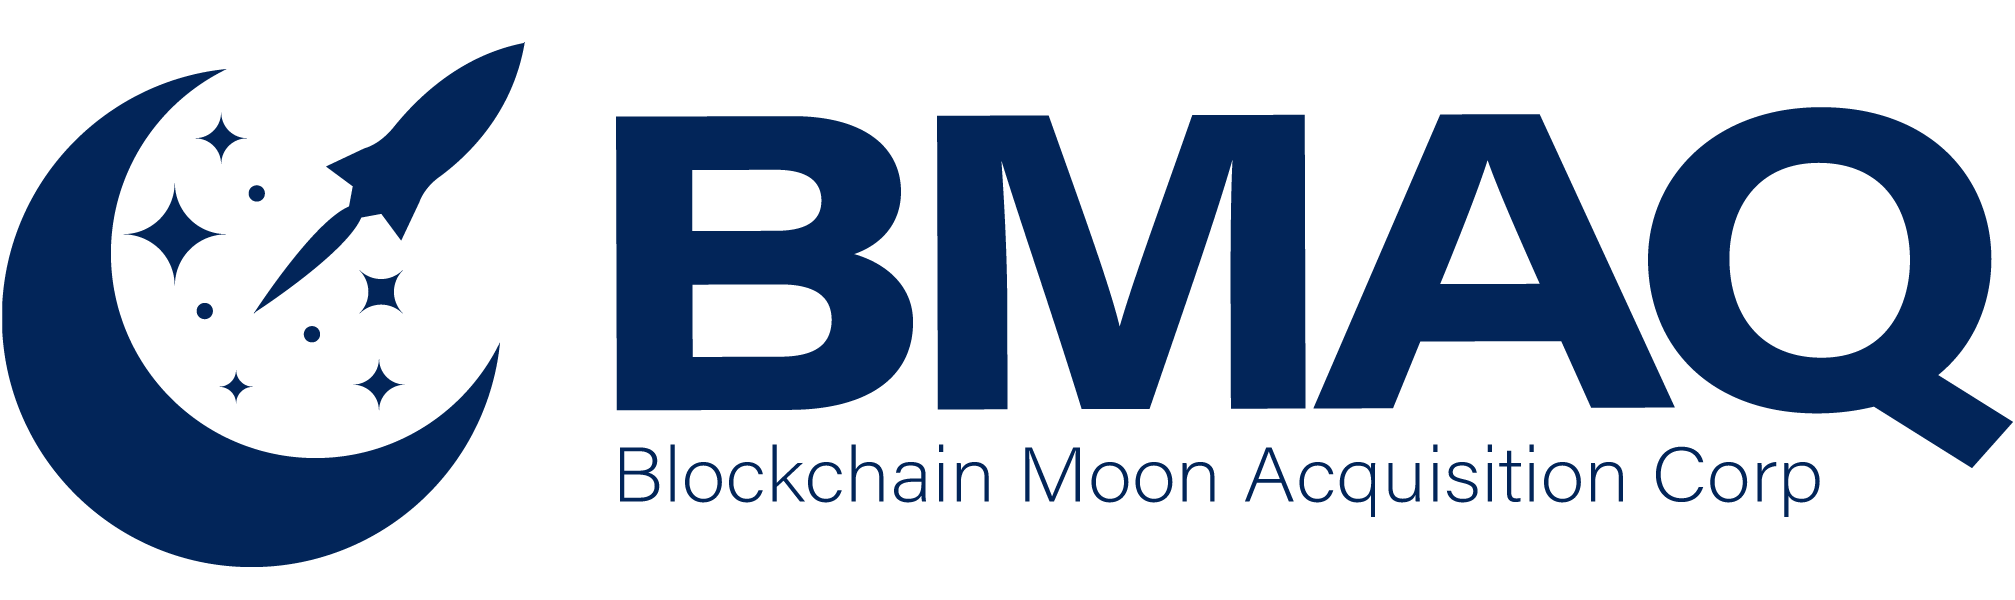 , Blockchain Moon Acquisition Corp. Announces Liquidation